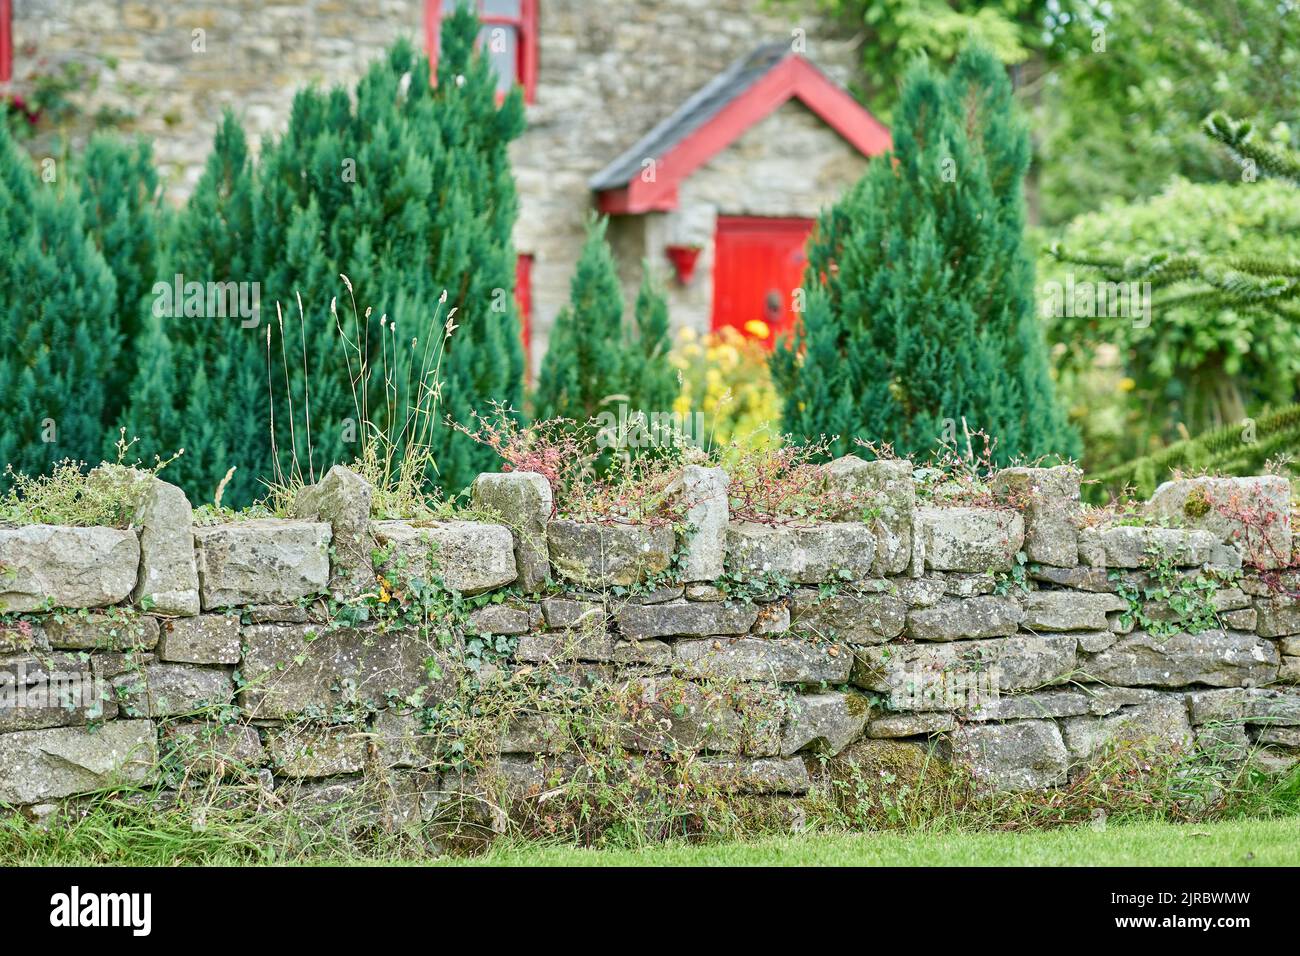 Fiori selvatici che crescono su un muro di pietra, con casa e giardino sullo sfondo Foto Stock